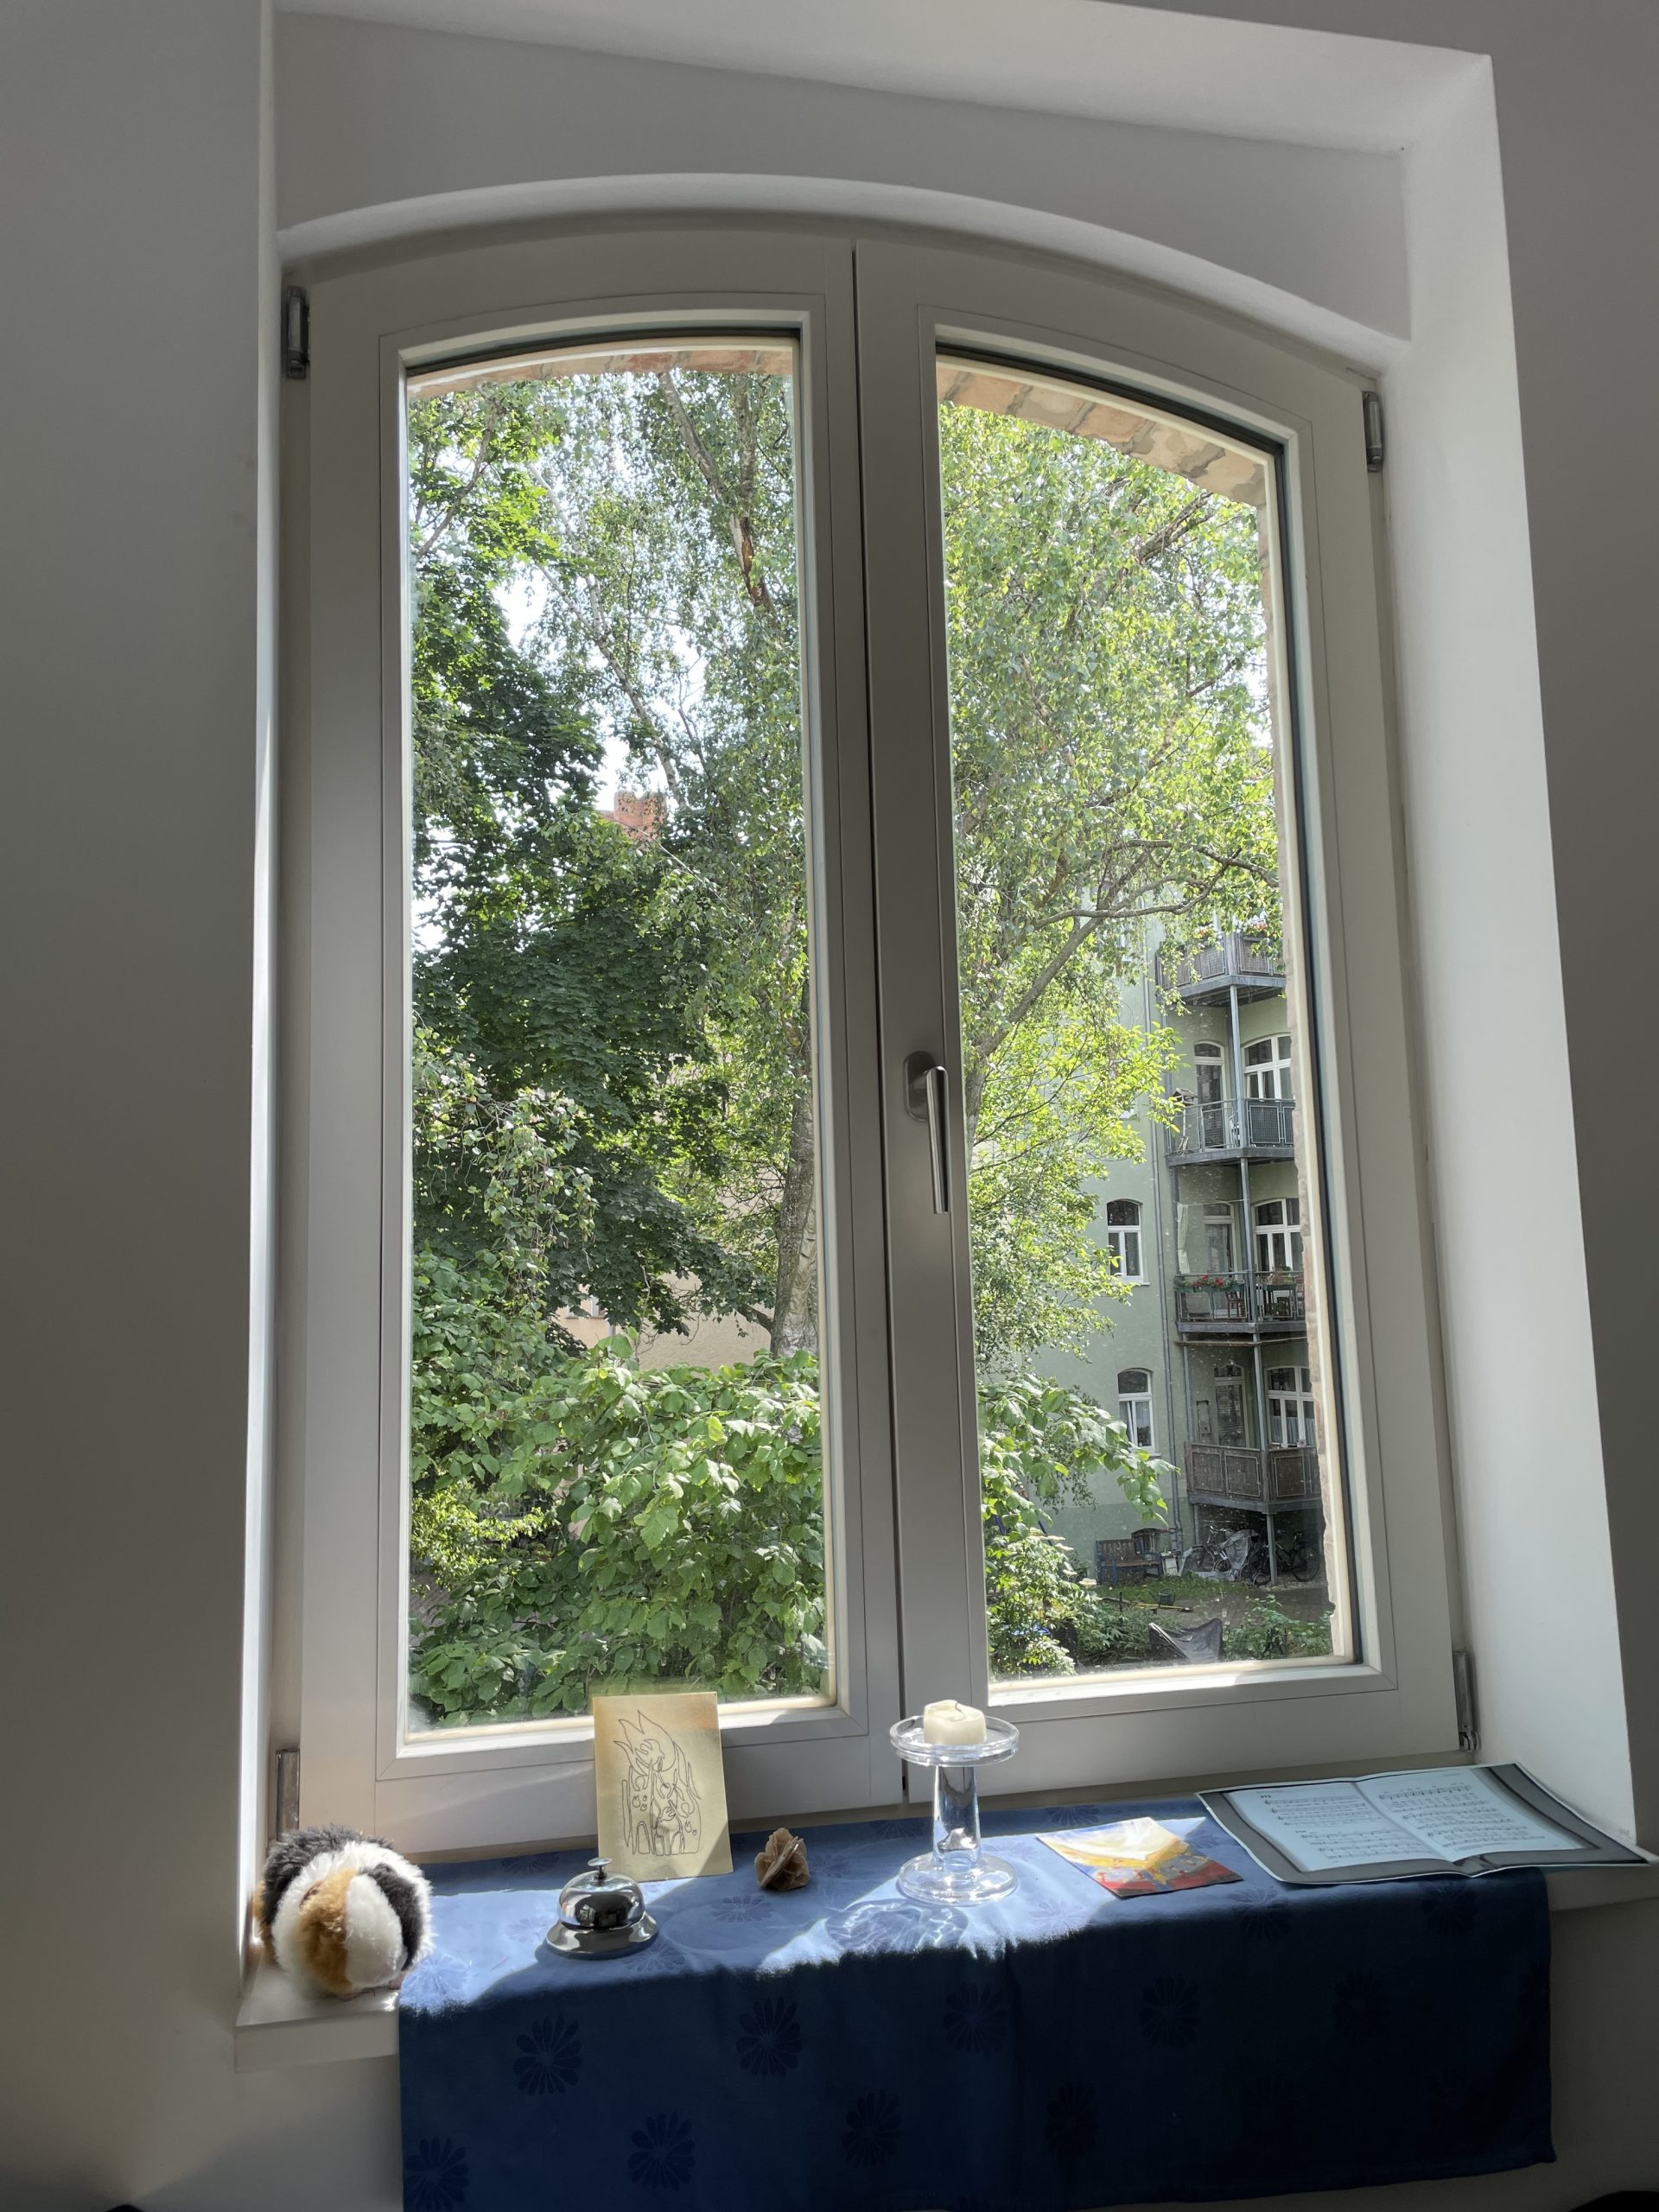 Fotografie des Blicks aus dem Fenster des Hinterhauses im Glauchaviertel auf Bäume und das Vorderhaus.